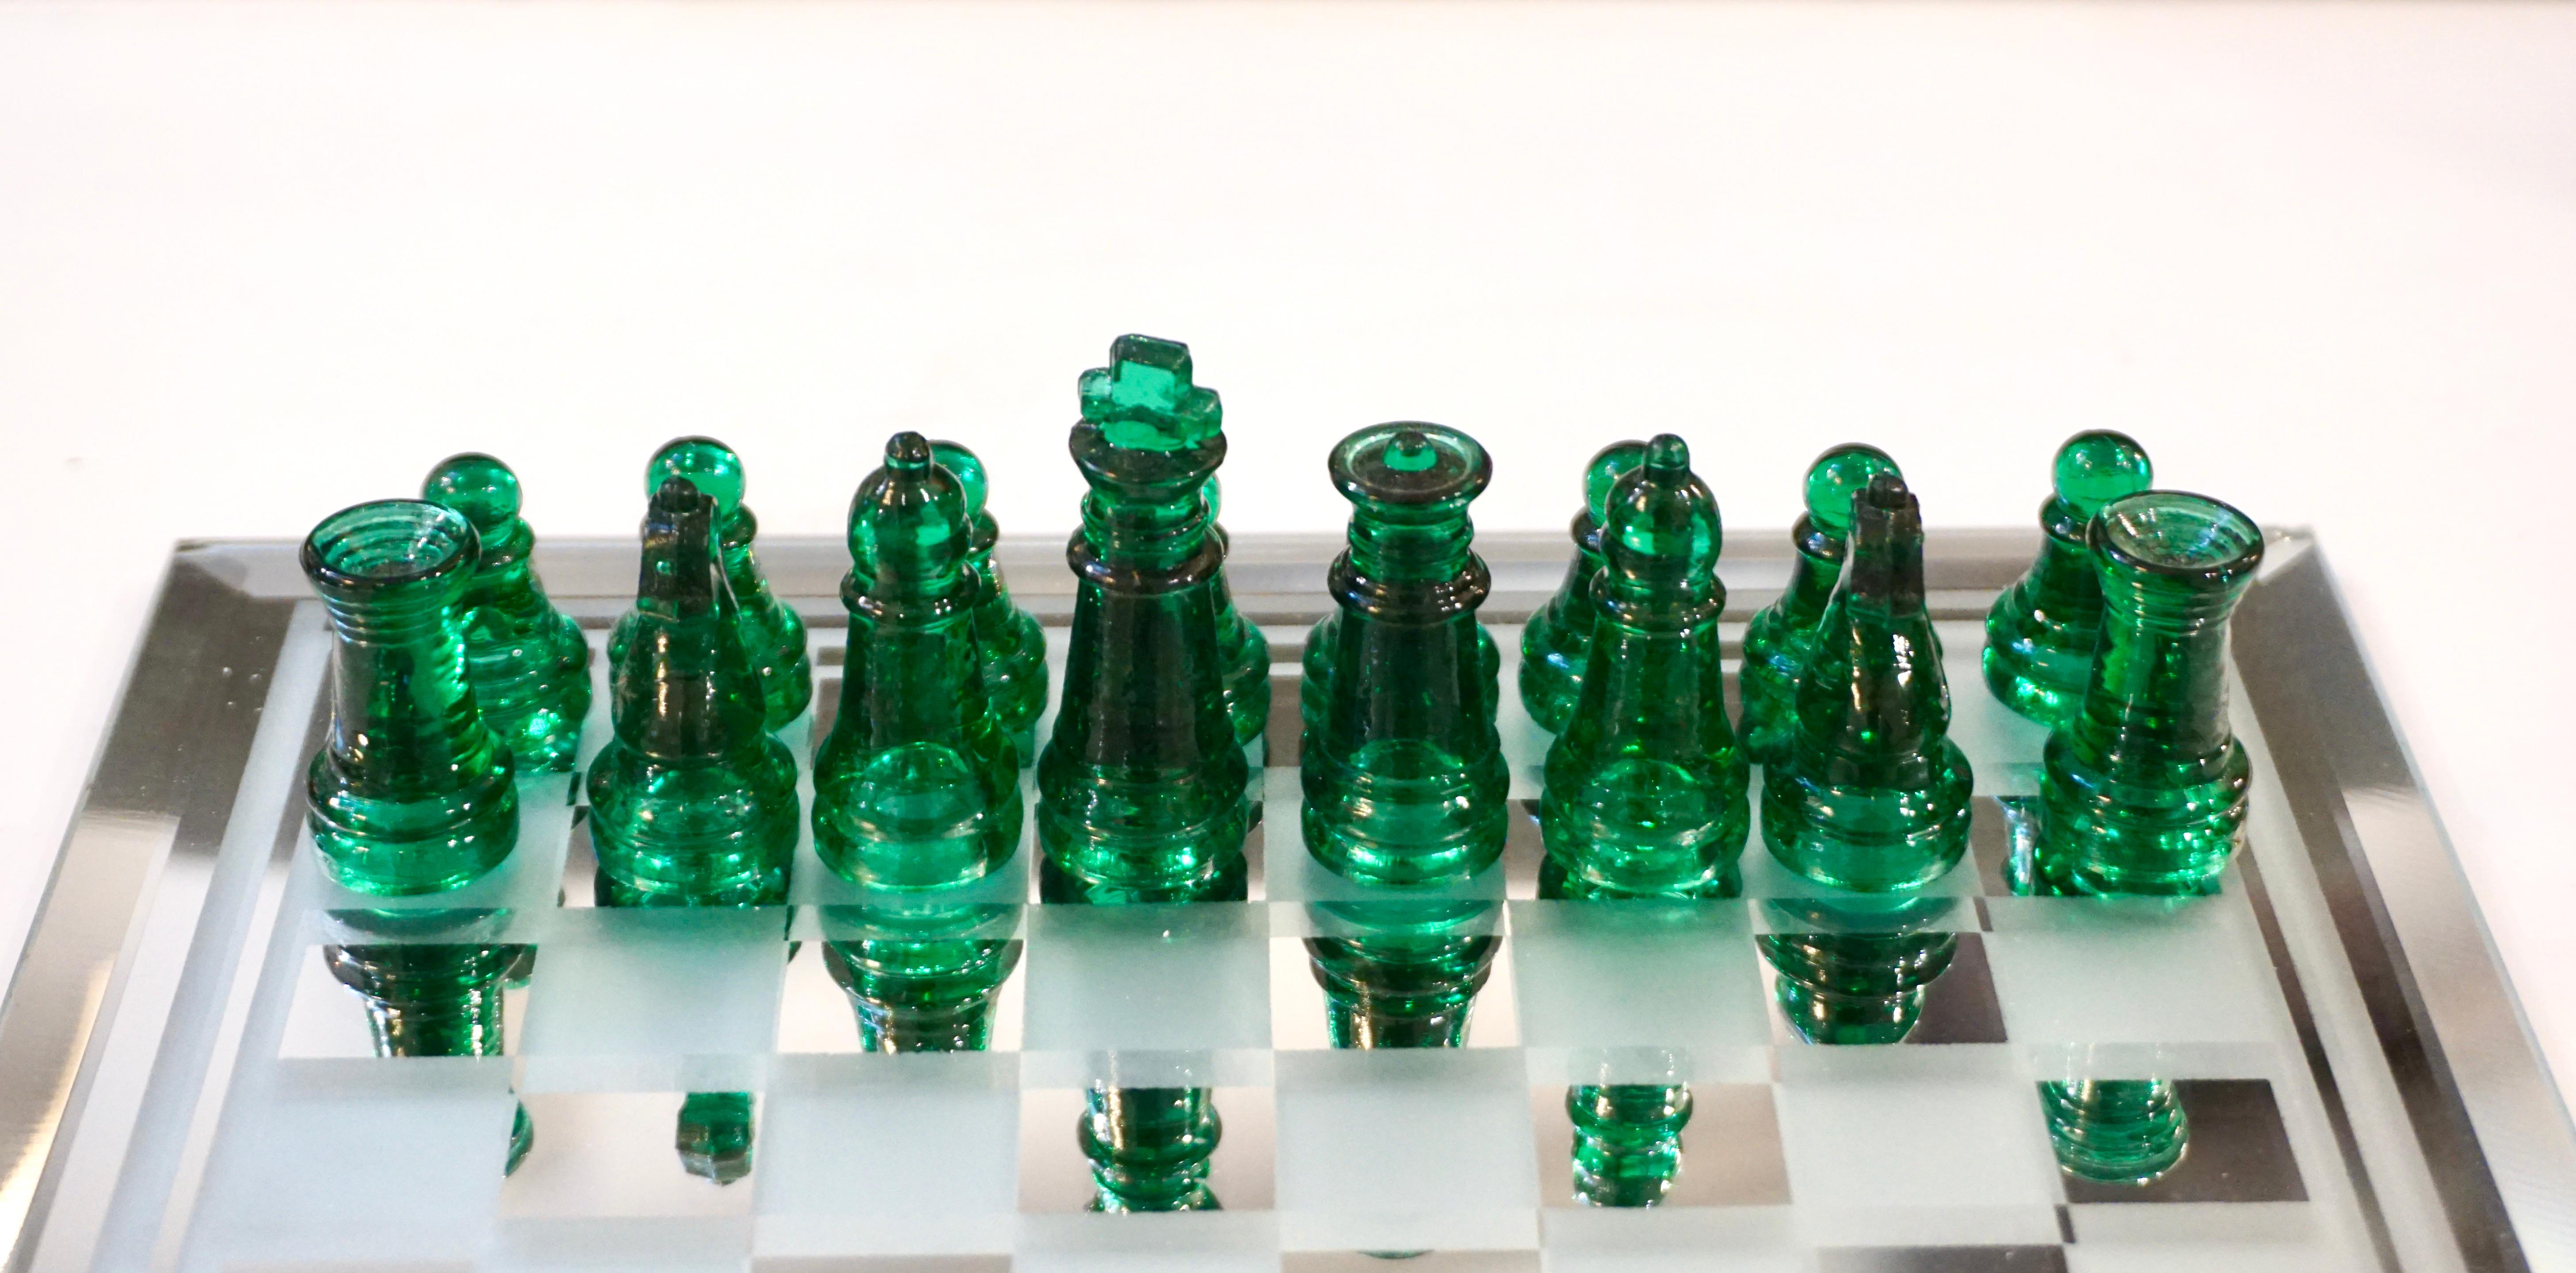 uranium glass chess set